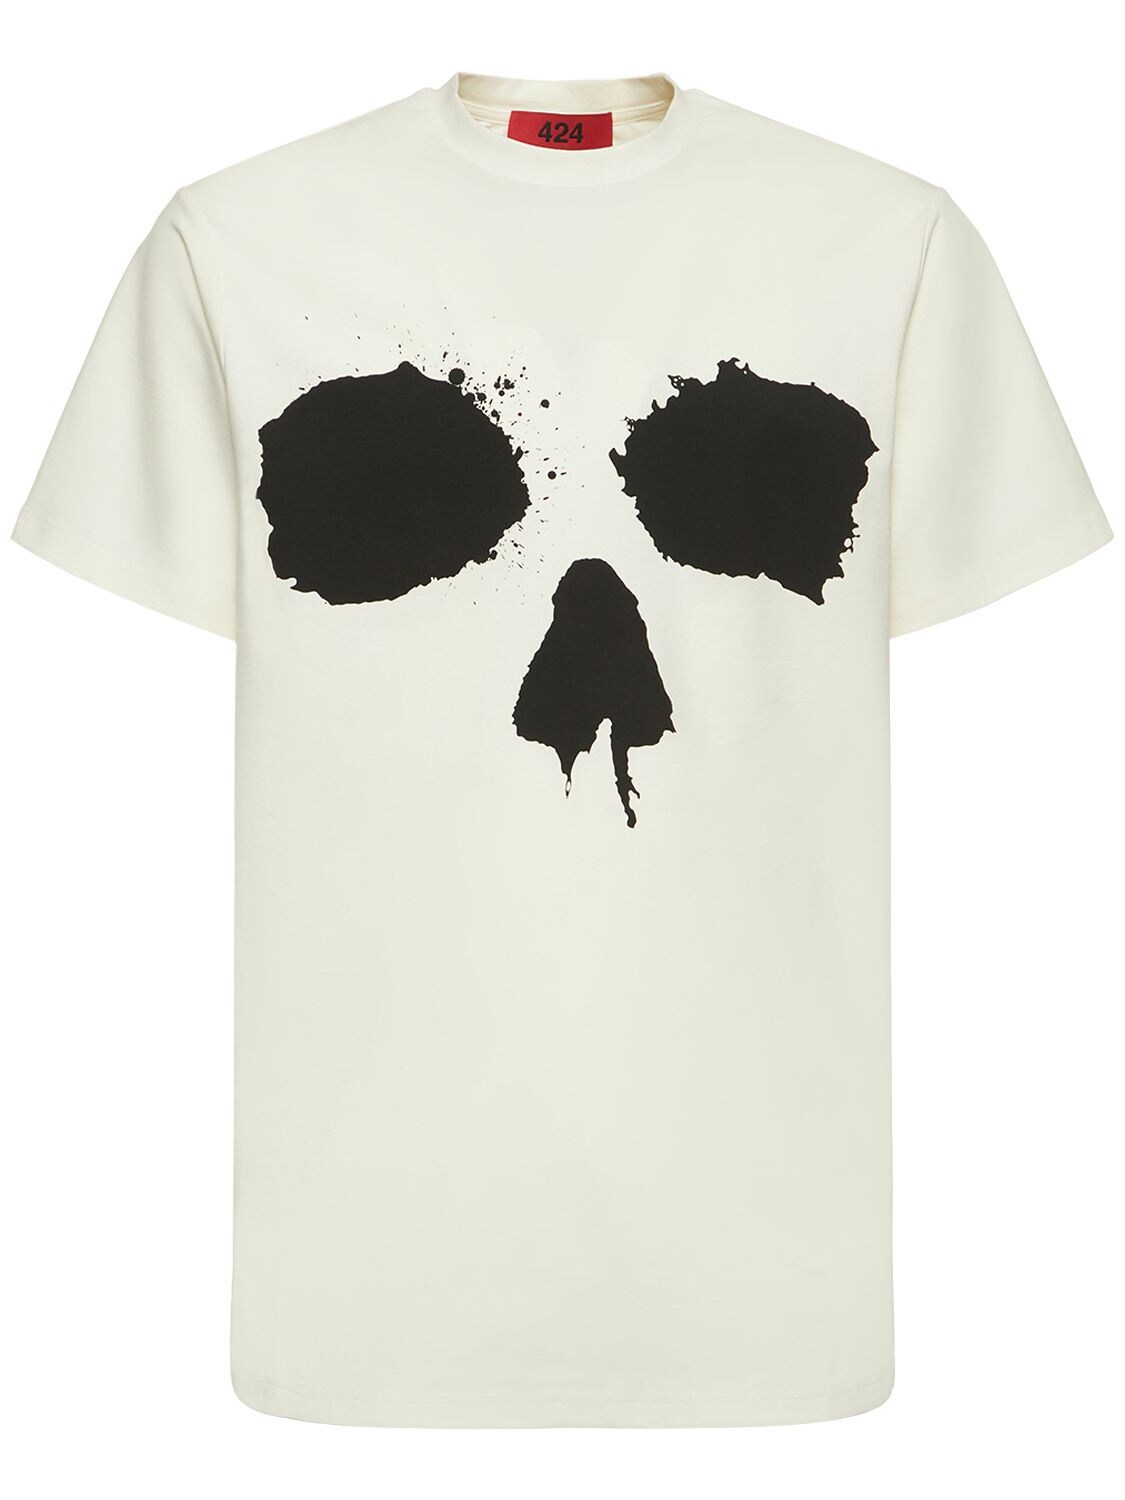 T-shirt En Jersey De Coton Imprimé Tête De Mort - 424 - Modalova